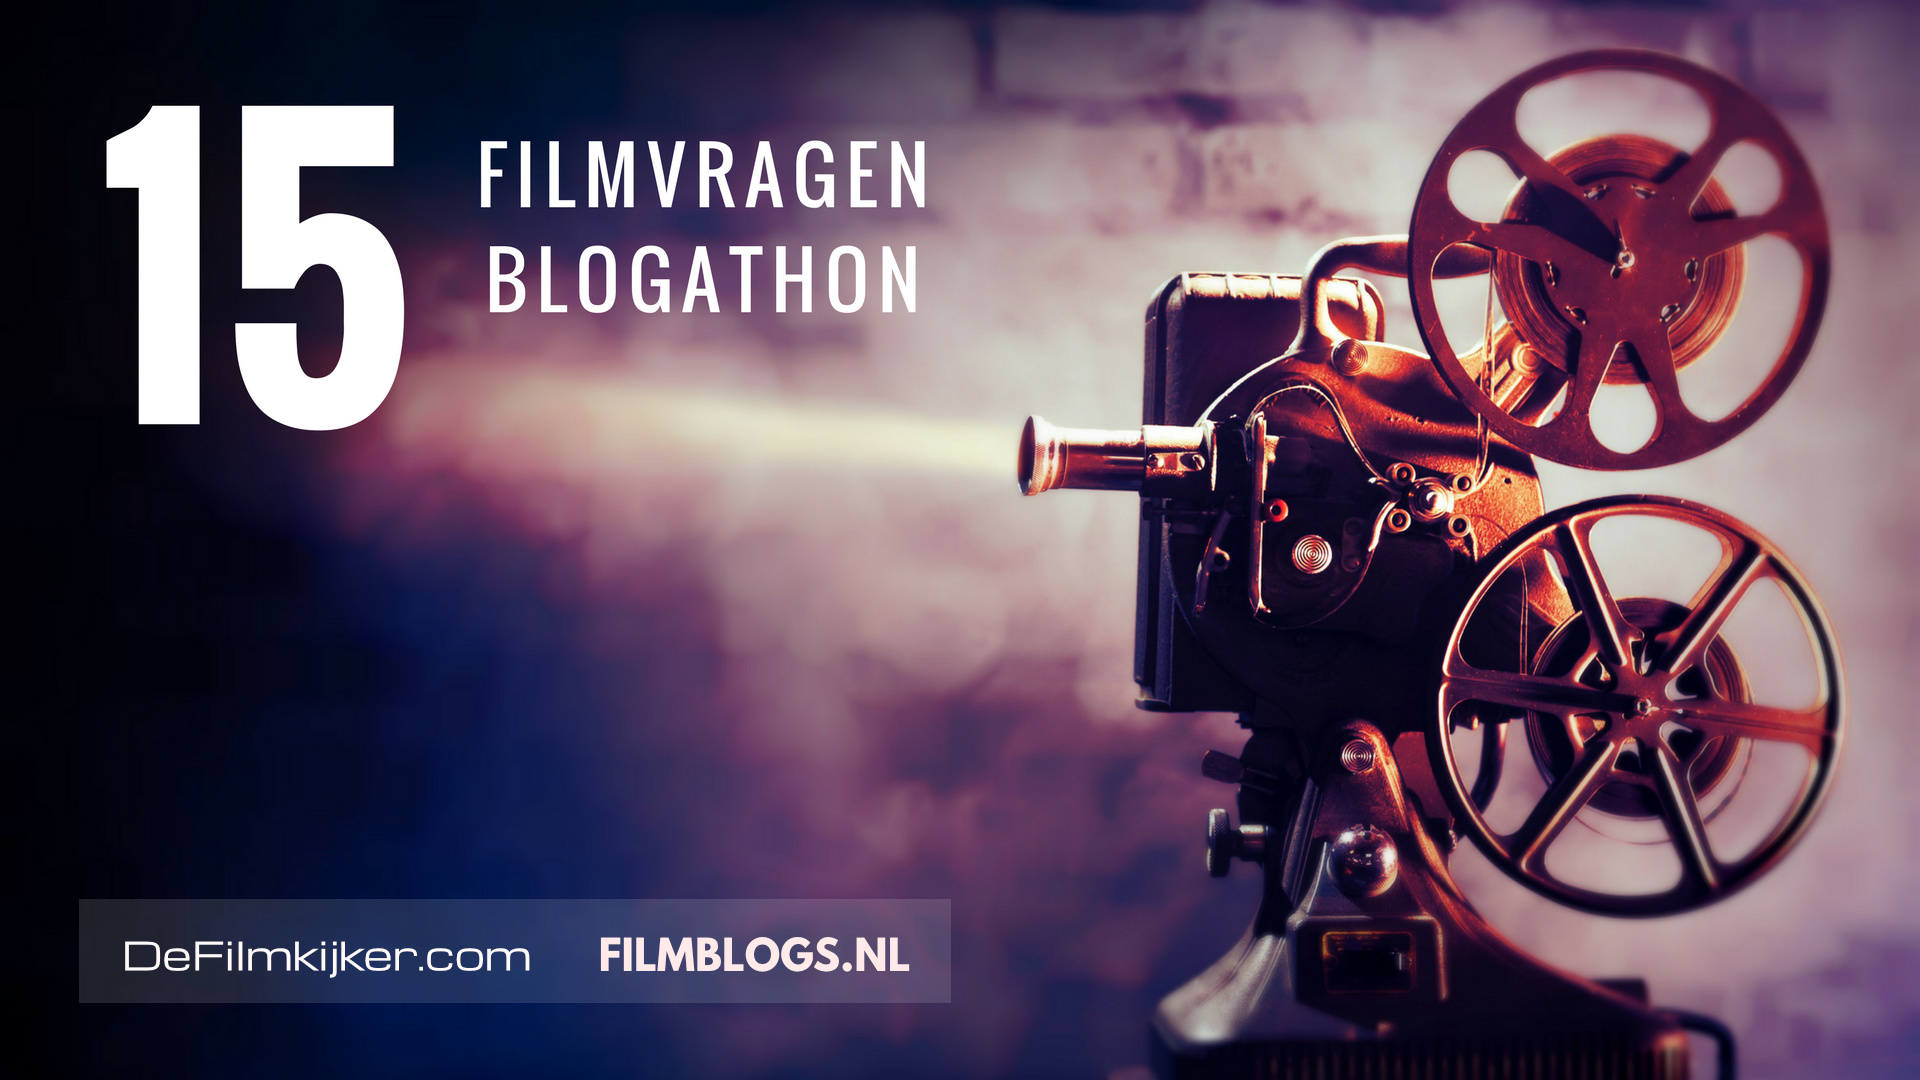 15 Filmvragen Blogathon Filmkijker